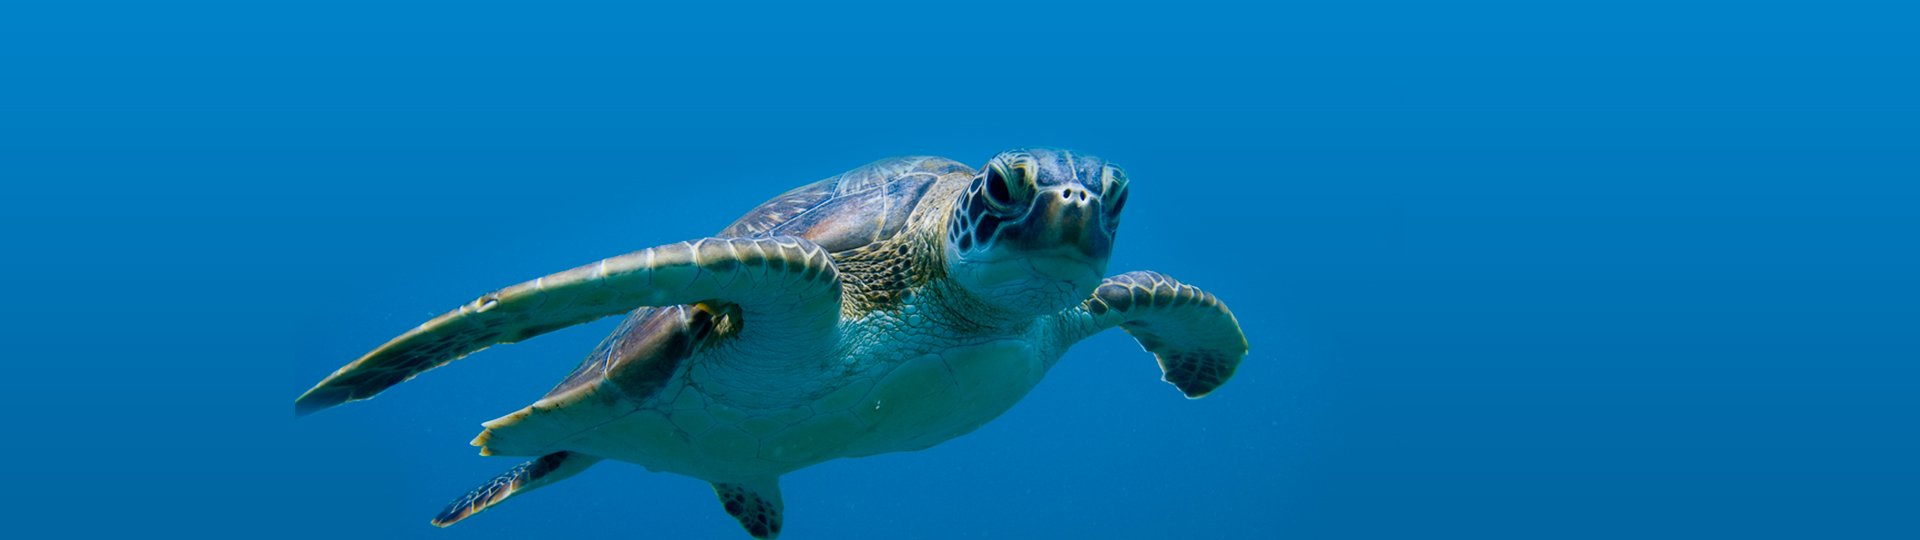 Sea Turtles | SEA LIFE at Mall of America